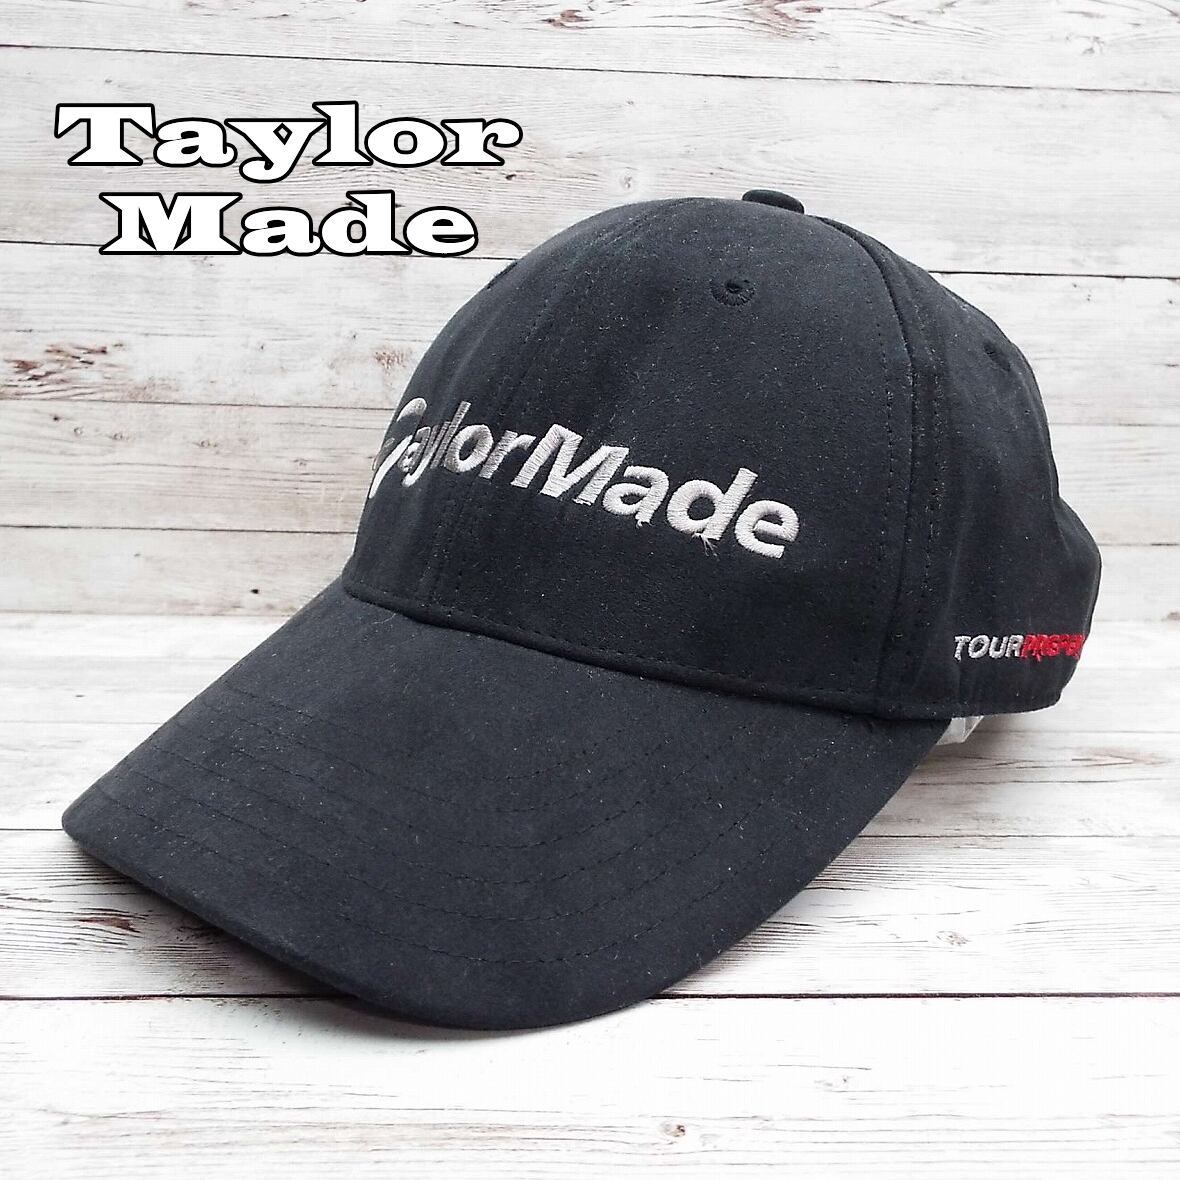 Taylor Made Taylor meido под замшу вышивка Logo колпак шляпа черный чёрный свободный размер голова вокруг :53~59cm одежда для гольфа мужской б/у одежда 